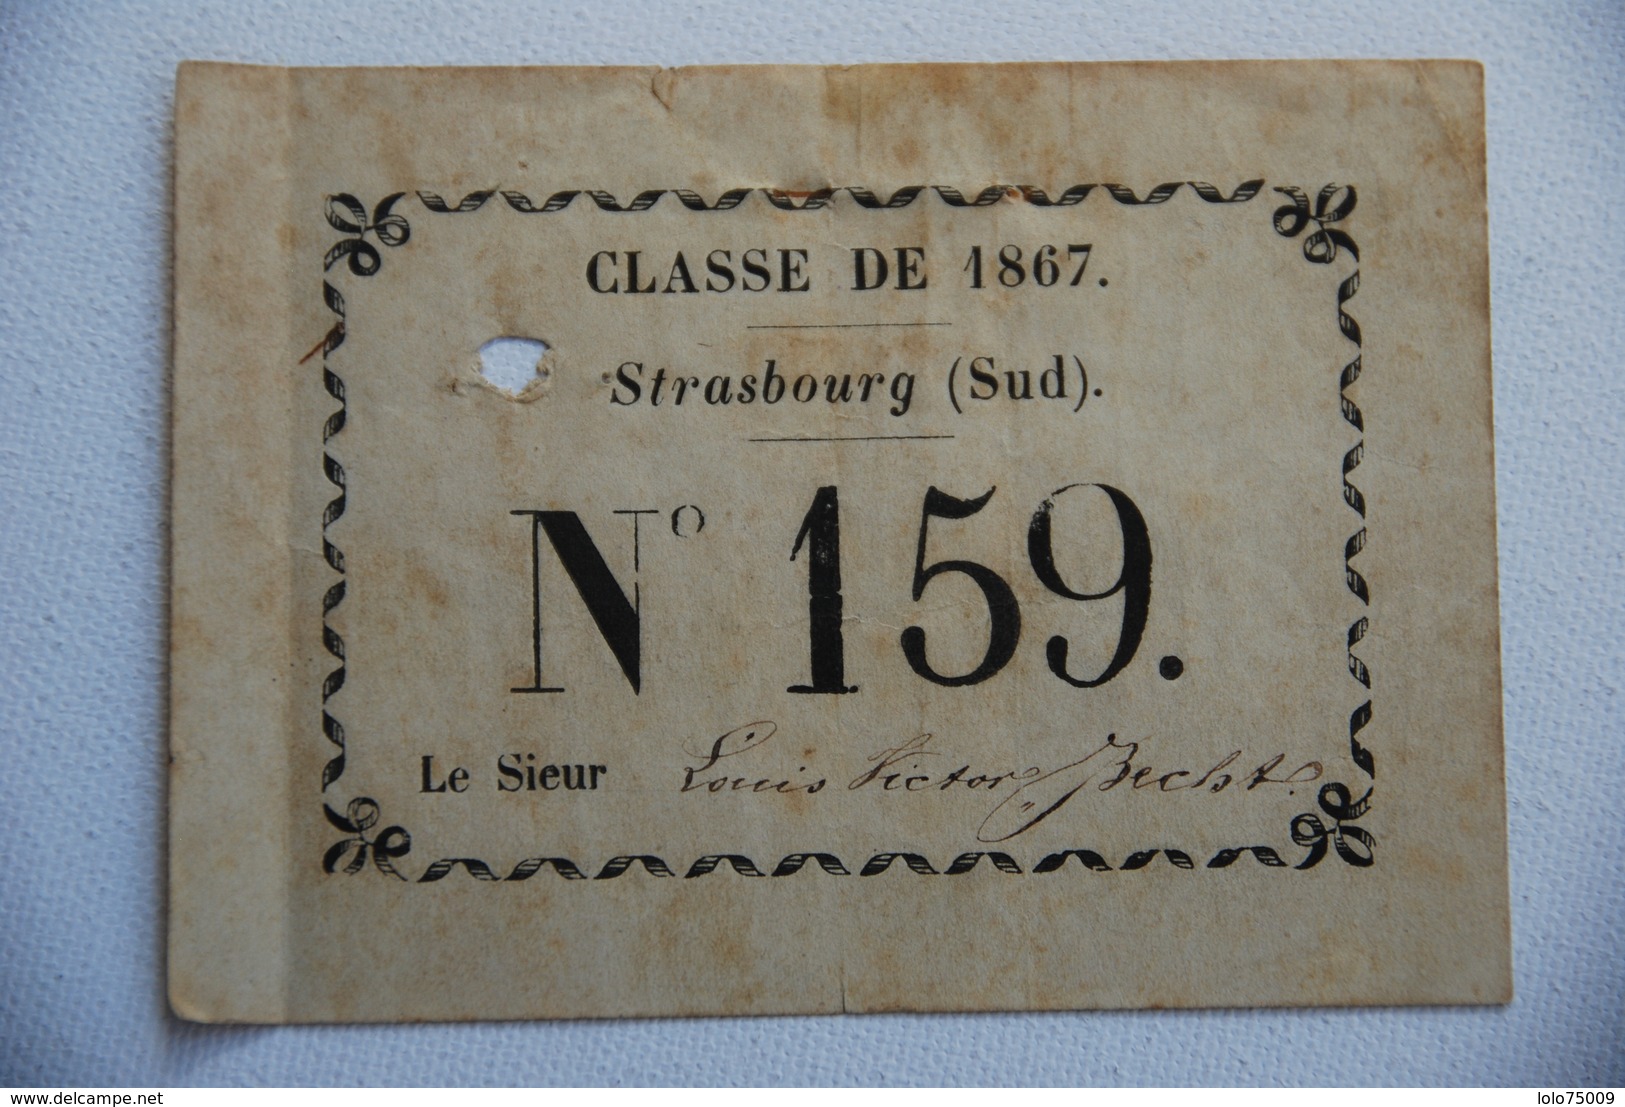 Carte Nominative Classe De 1867 Strasbourg Tres Rare Tirage Au Sort Conscript Conscription - Historical Documents